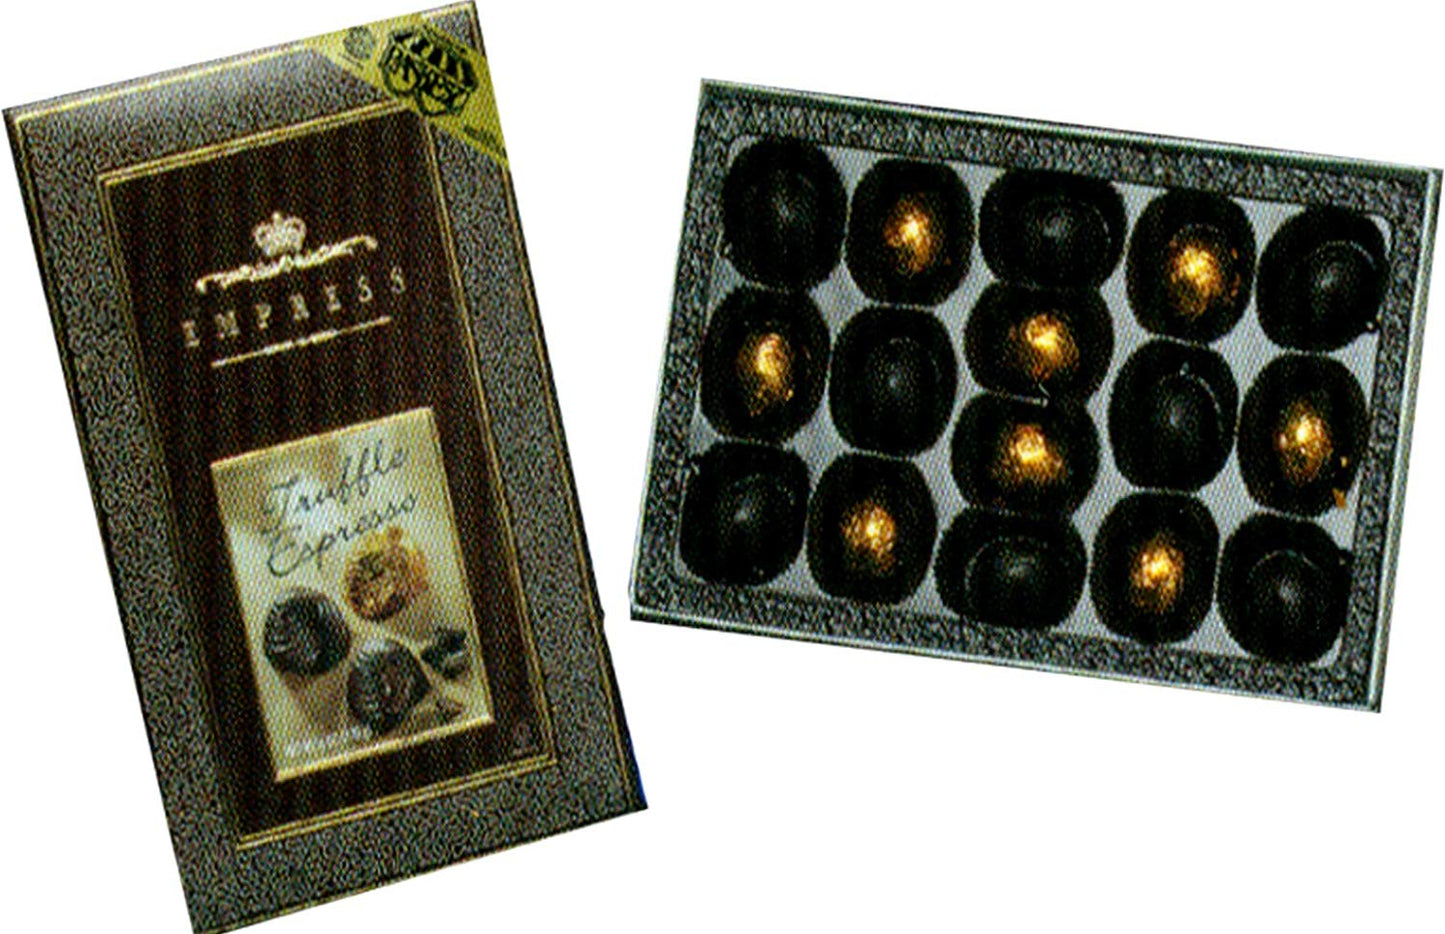 EMPRESS: Espresso Truffles Chocolate Box, 6 oz - Vending Business Solutions